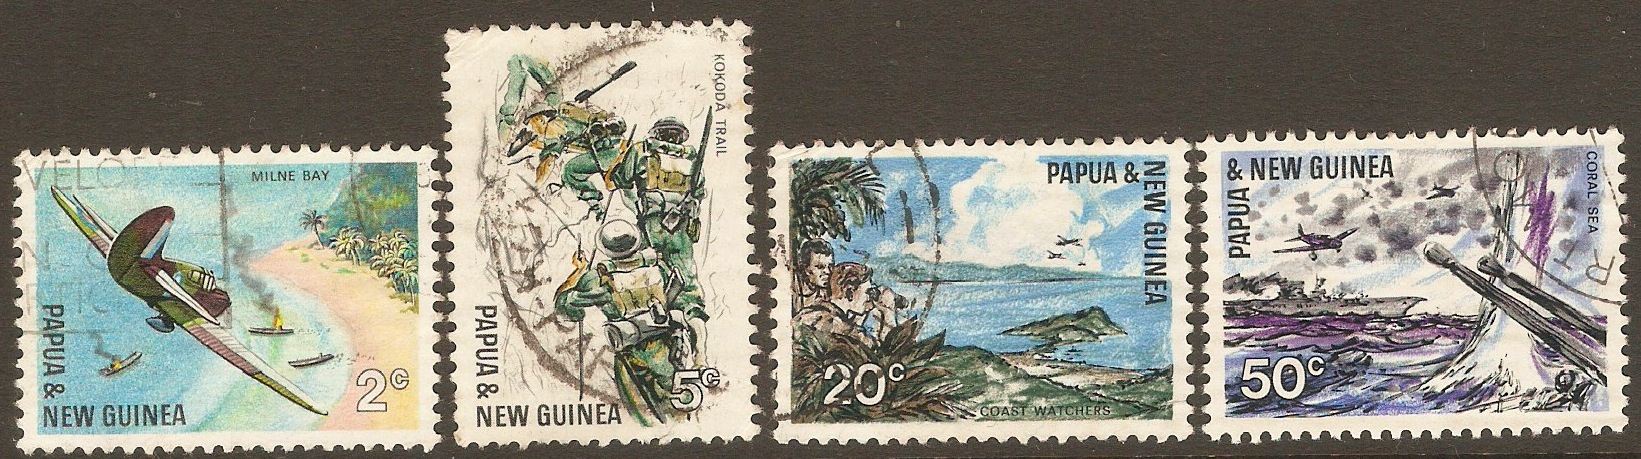 Papua New Guinea 1967 Pacific War Anniversary set. SG117-SG120.